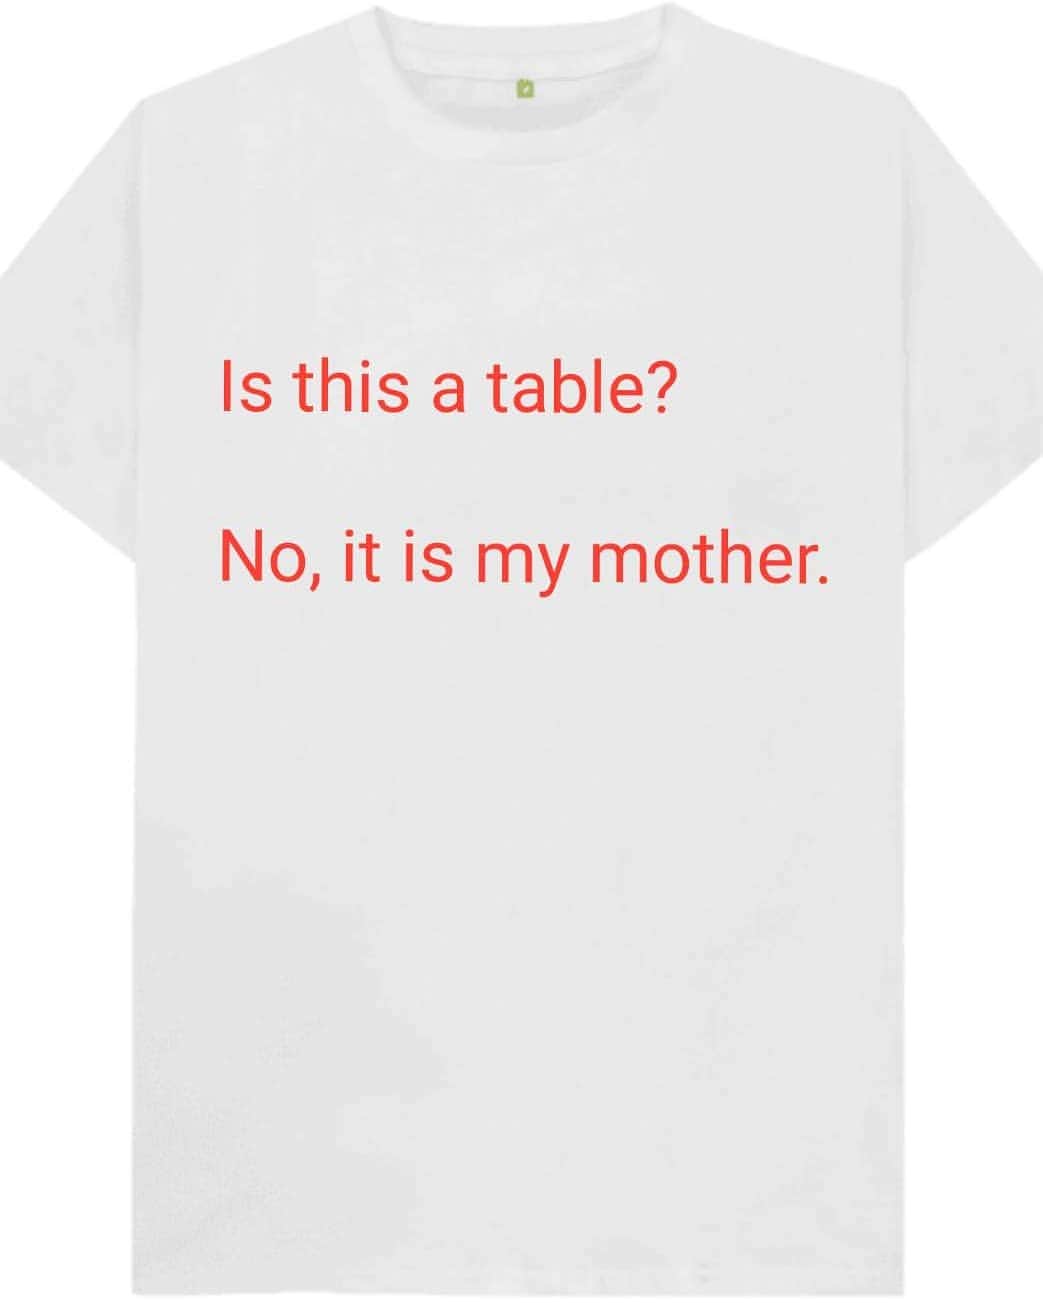 松原義和のインスタグラム：「僕の考えた文字Tシャツ #風藤松原#松原義和#Tシャツ#文字#文字Tシャツ#ネタ#小ネタ#ネタTシャツ#ファッション#白T#お笑い#笑い#fashion#love#shirt#gu#ユニクロ#japanese#テスト#問題#white#英語#洋服#clothes#chicken#people#interesting#red#table#mother」